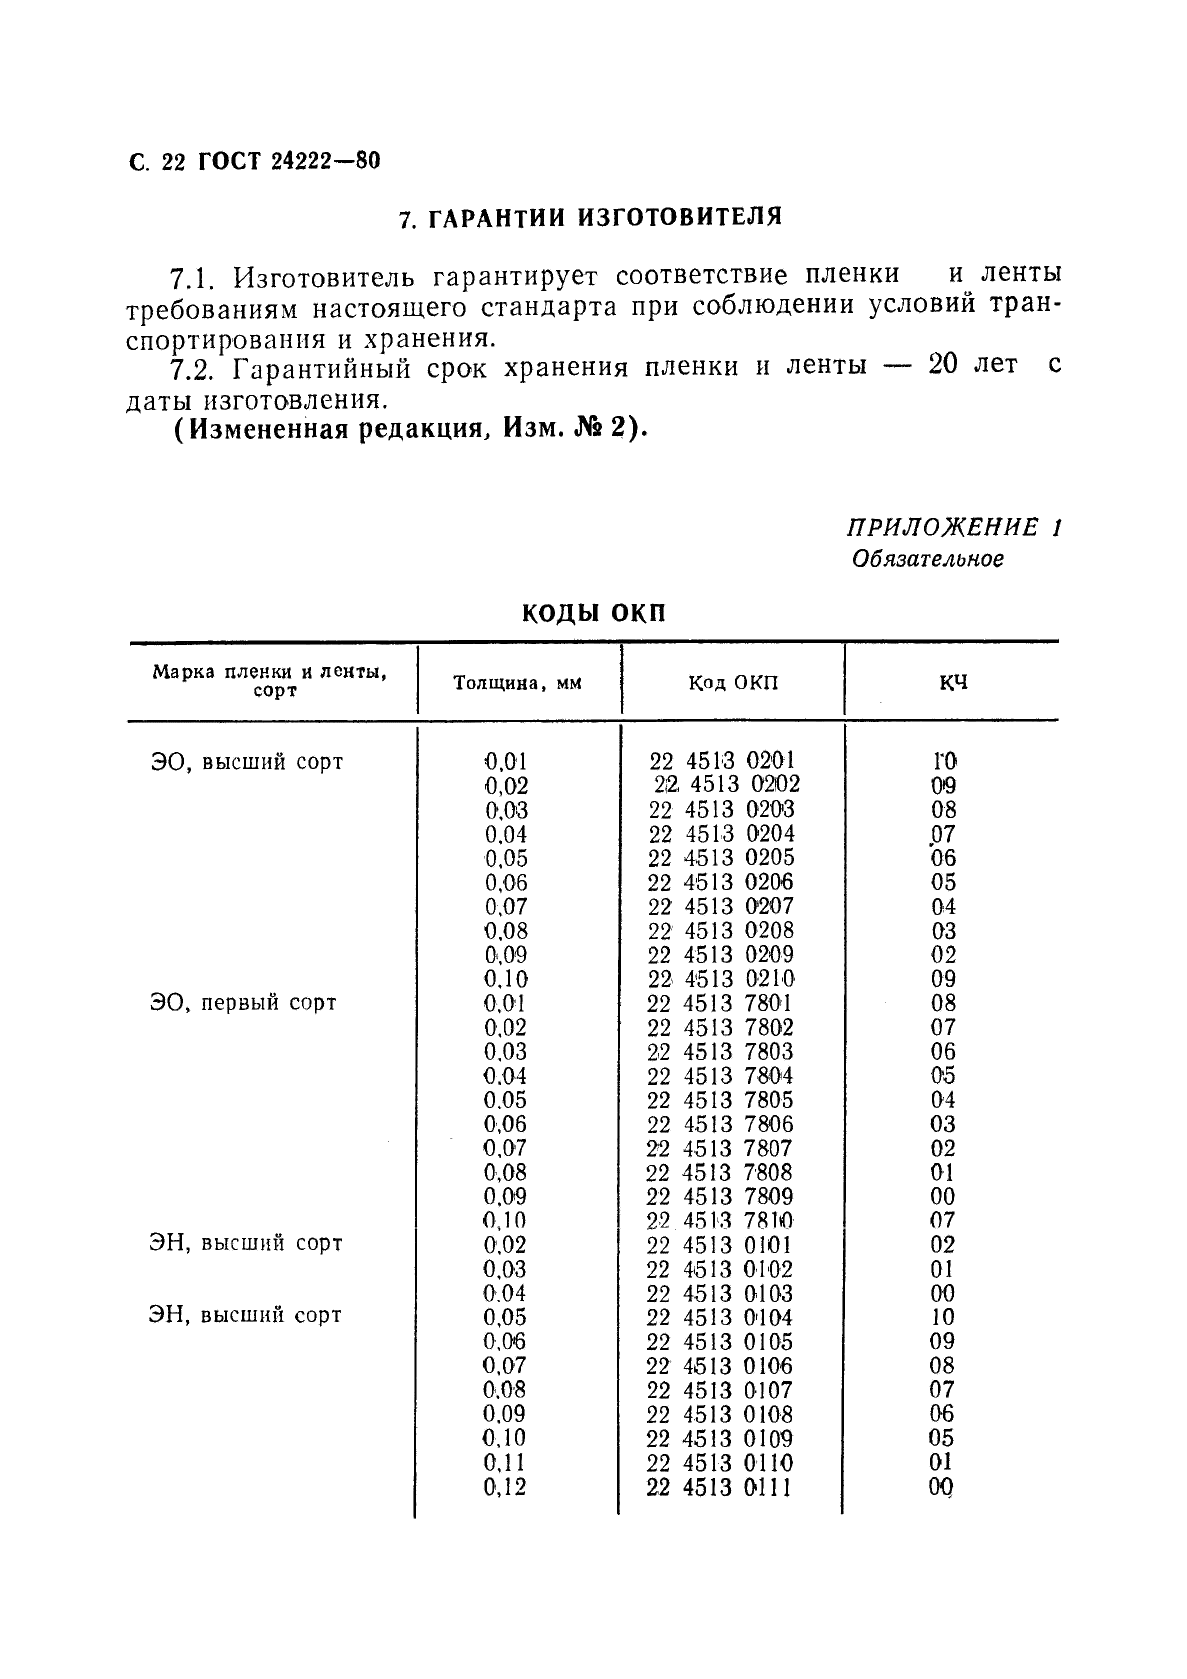 ГОСТ 24222-80 Пленка и лента из фторопласта-4. Технические условия (фото 24 из 28)